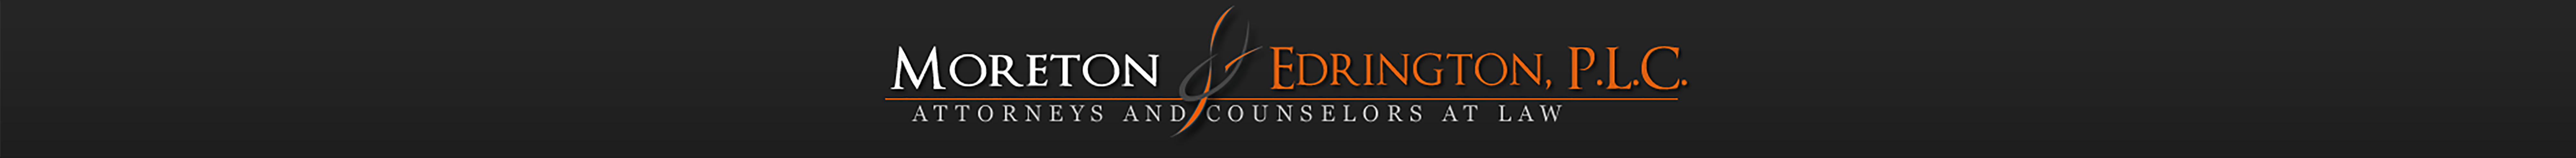 Edrington Logo - Moreton & Edrington, P.L.C. - Attorneys and Counselors at Law